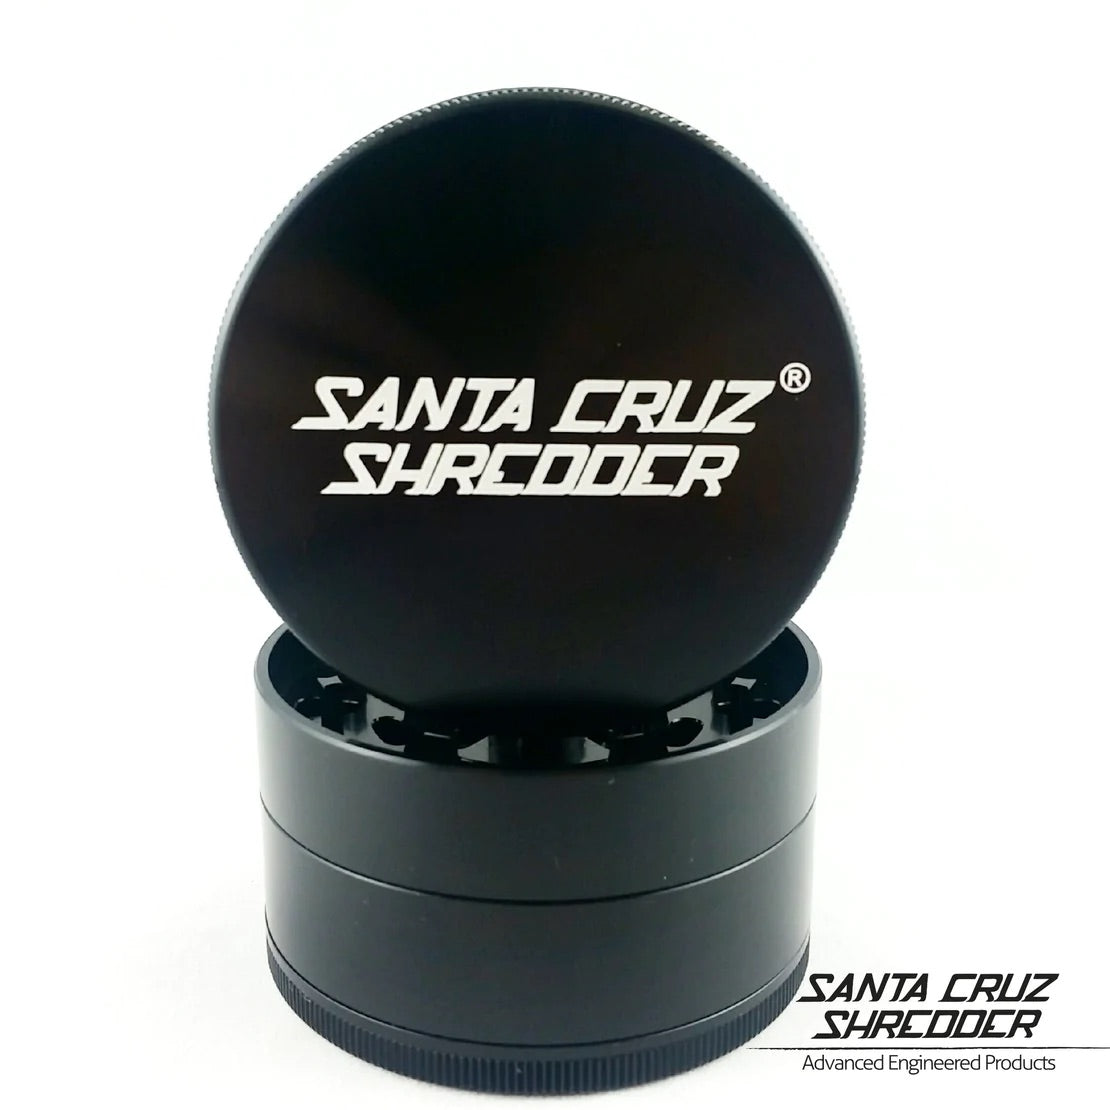 Santa Cruz Shredder Large 4pc Grinder